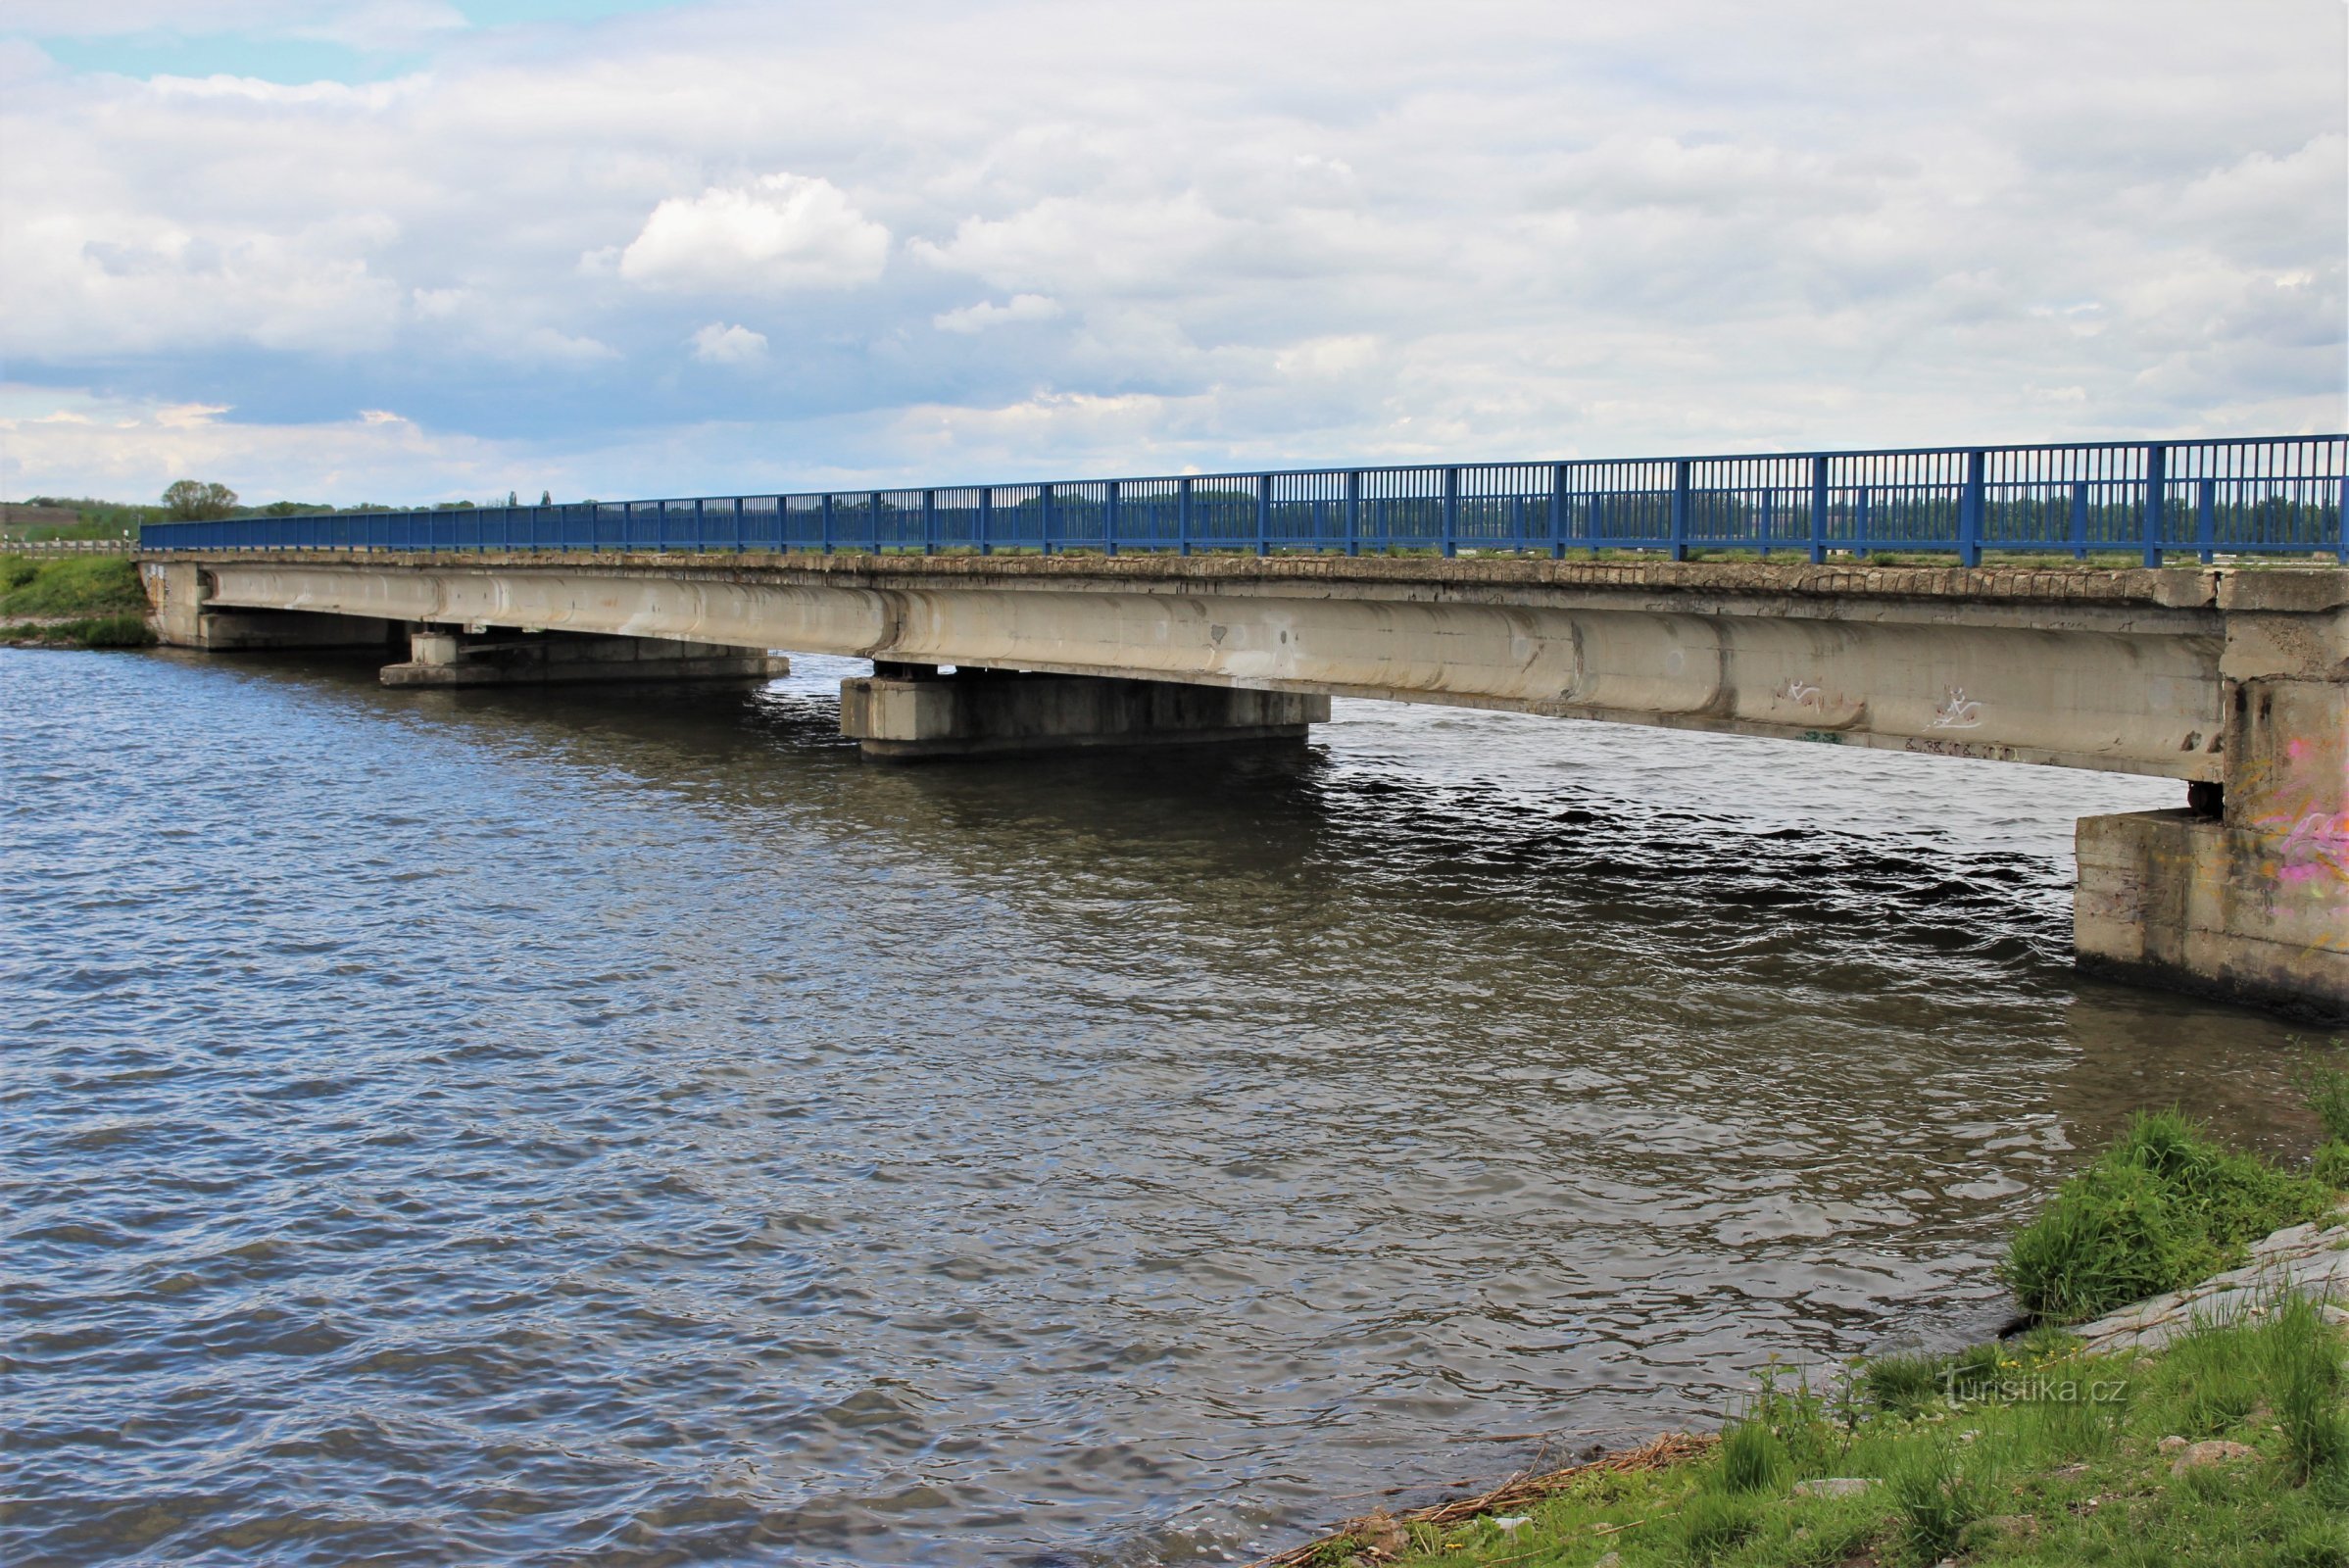 Brod-Brücke auf Dyja